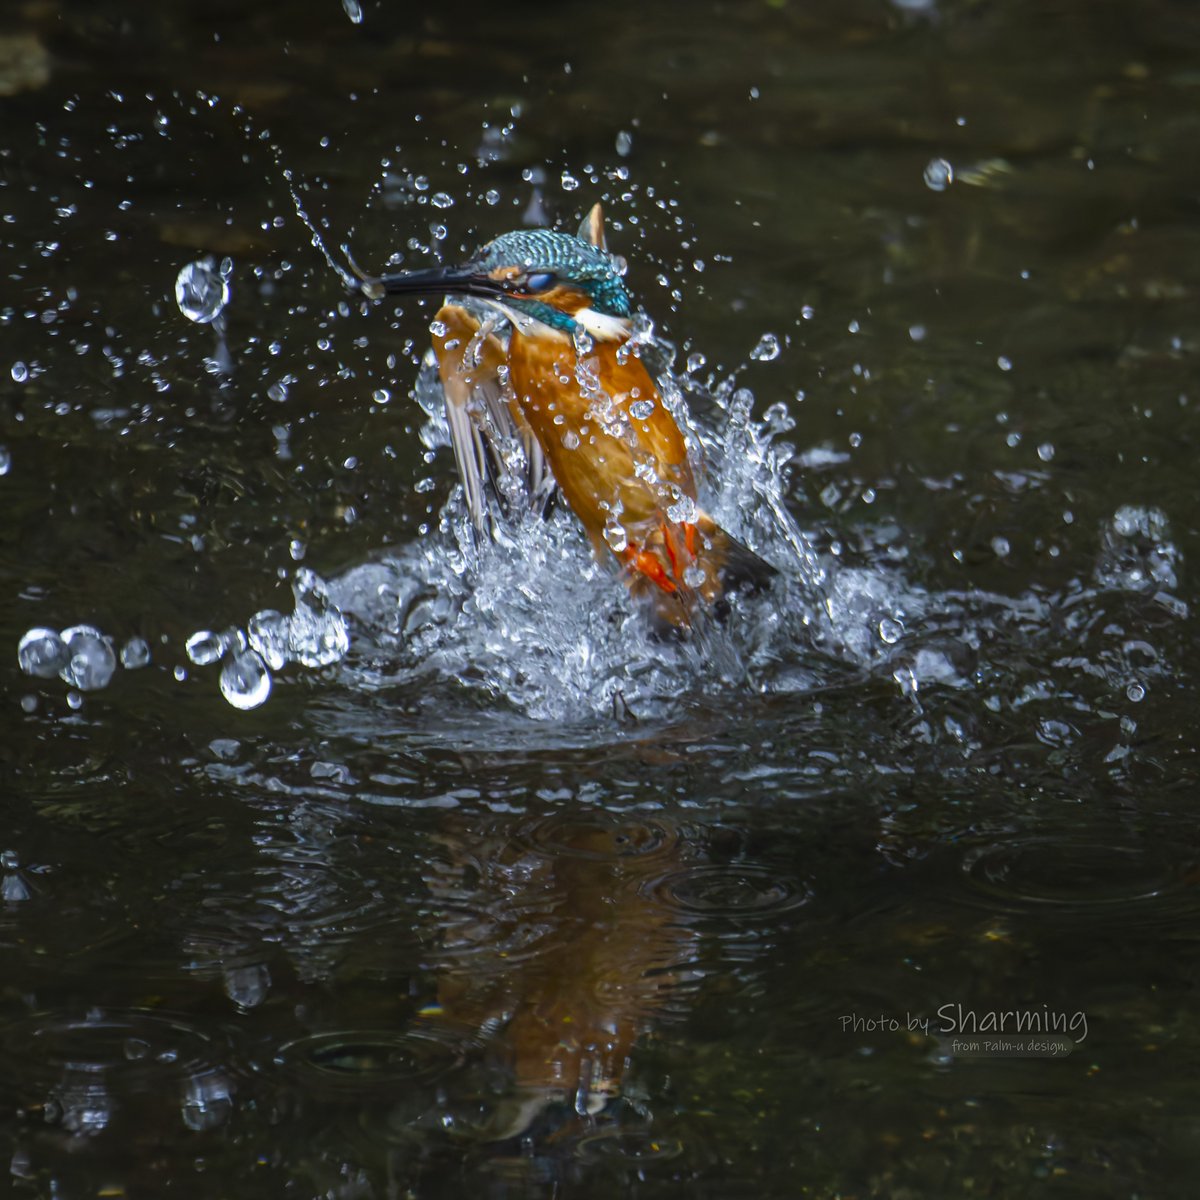 おはようございます！

今日は暑くなるらしいので適度な水分補給を忘れずに！😁

#カワセミ #kingfisher 
#α1 #SEL100400GM 
#SEL20TC #SONY